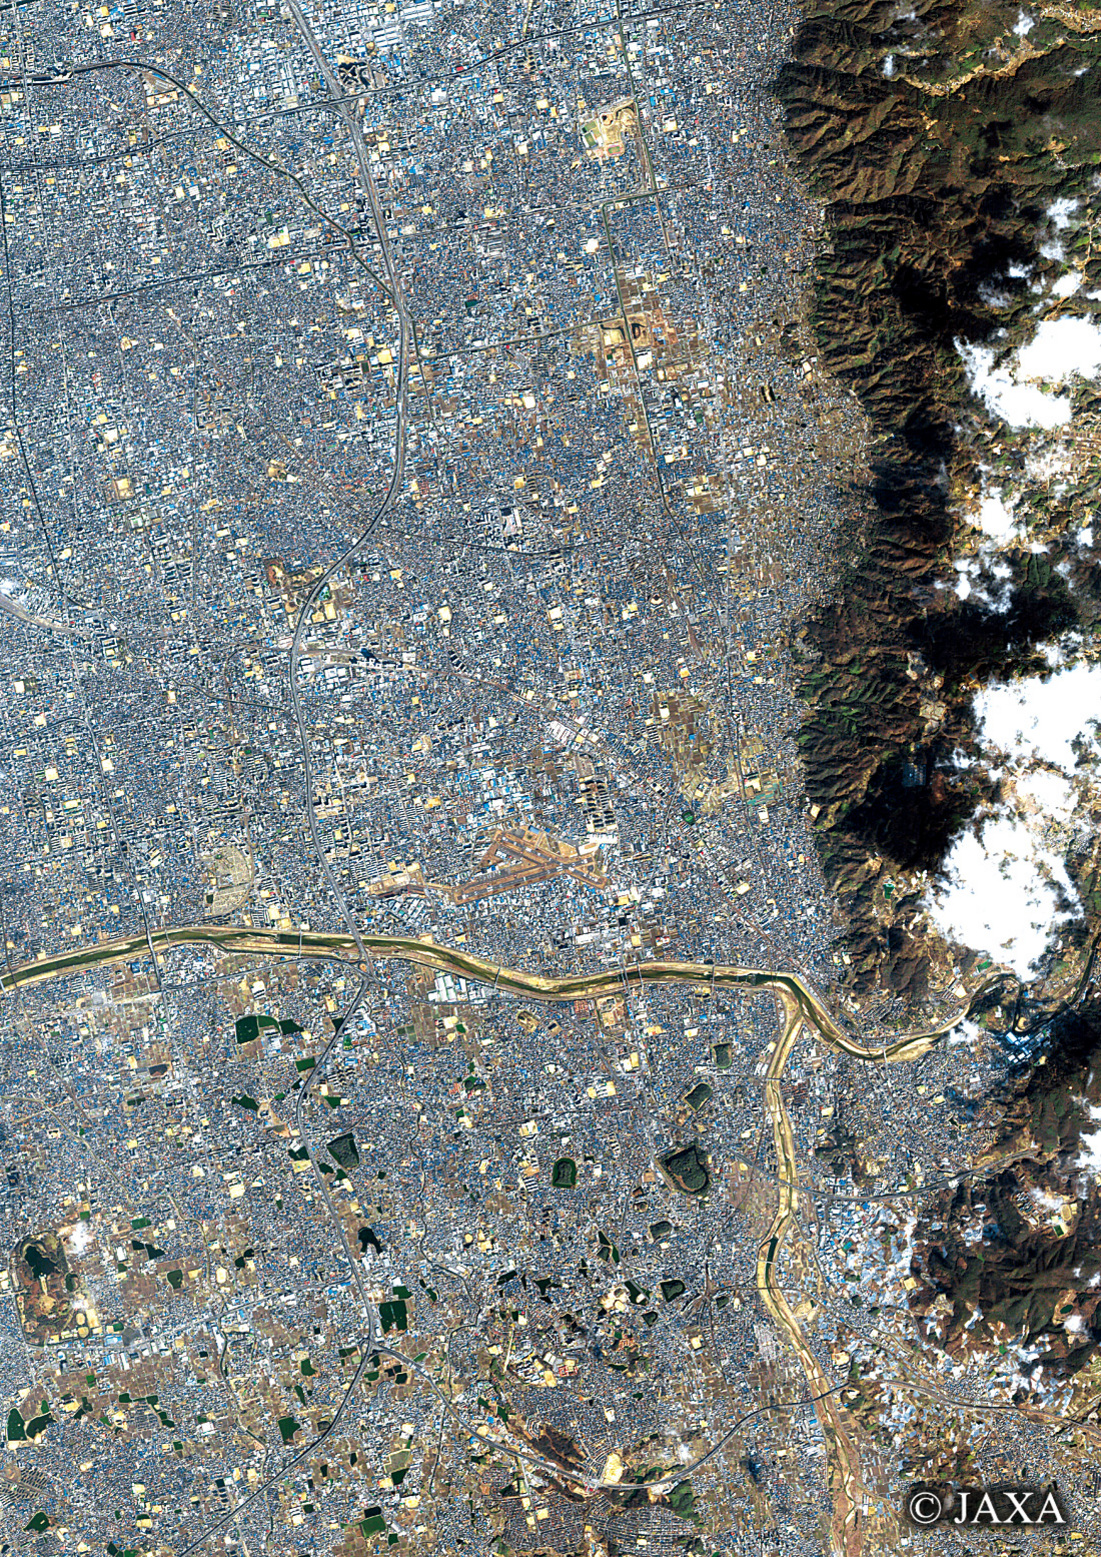 だいちから見た日本の都市 八尾市:衛星画像